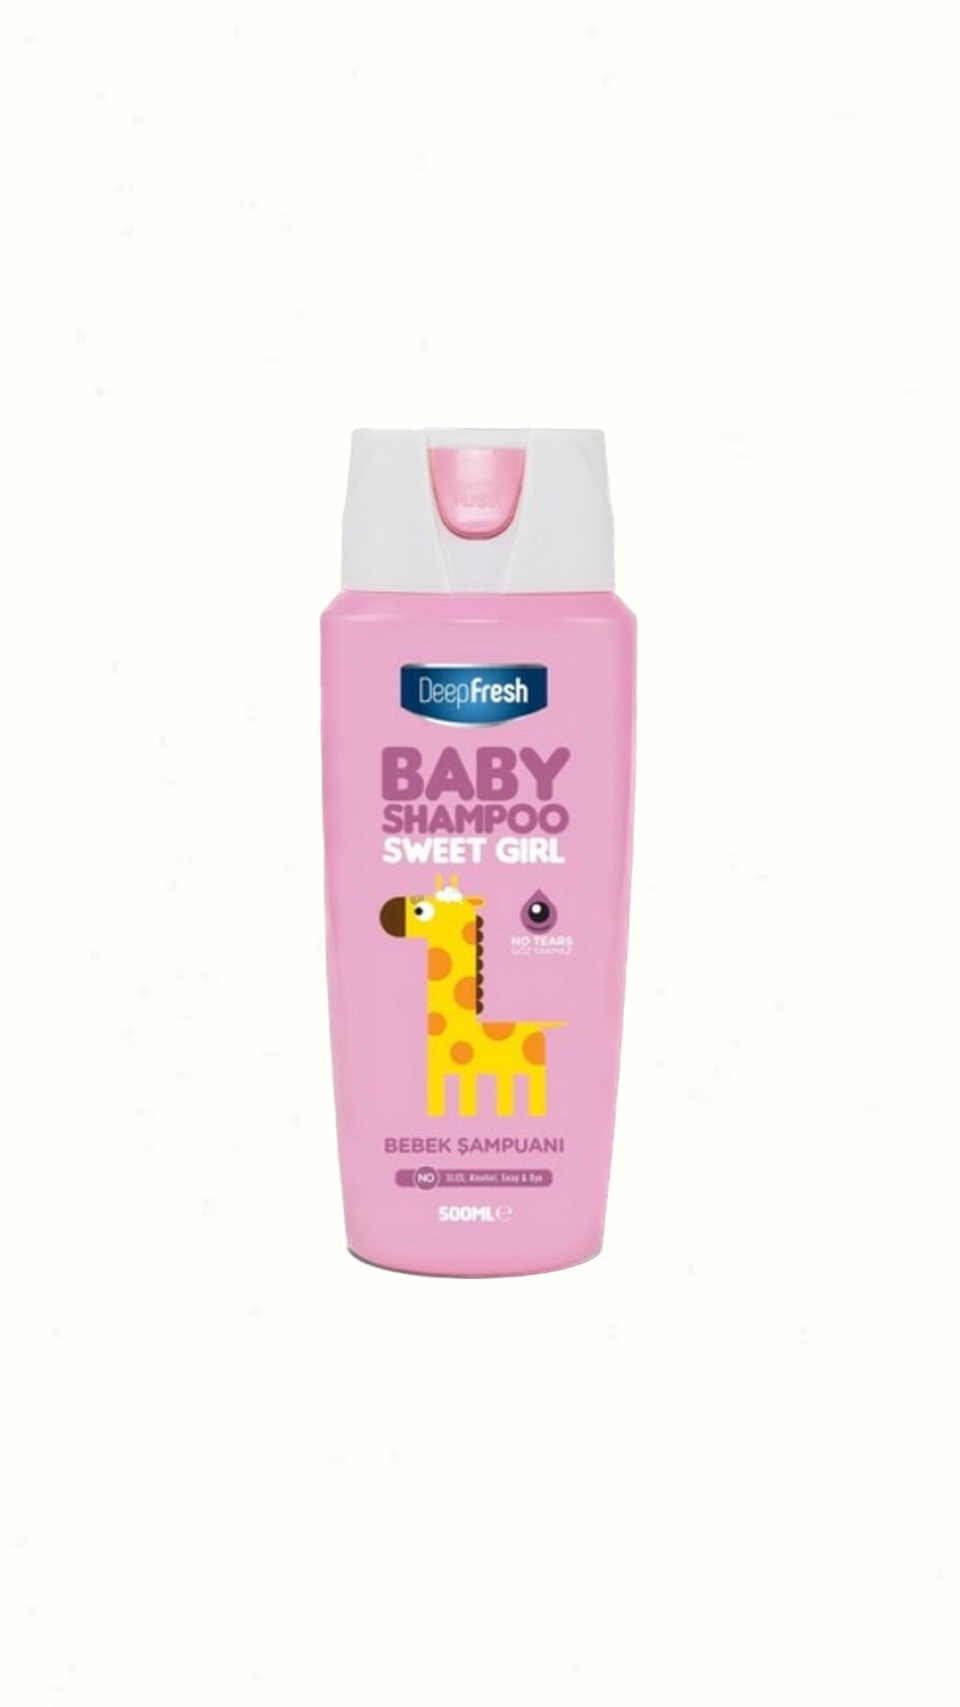 DeepFresh BABY Shampoo Детский шампунь для девочек. - 250 ₽, заказать онлайн.